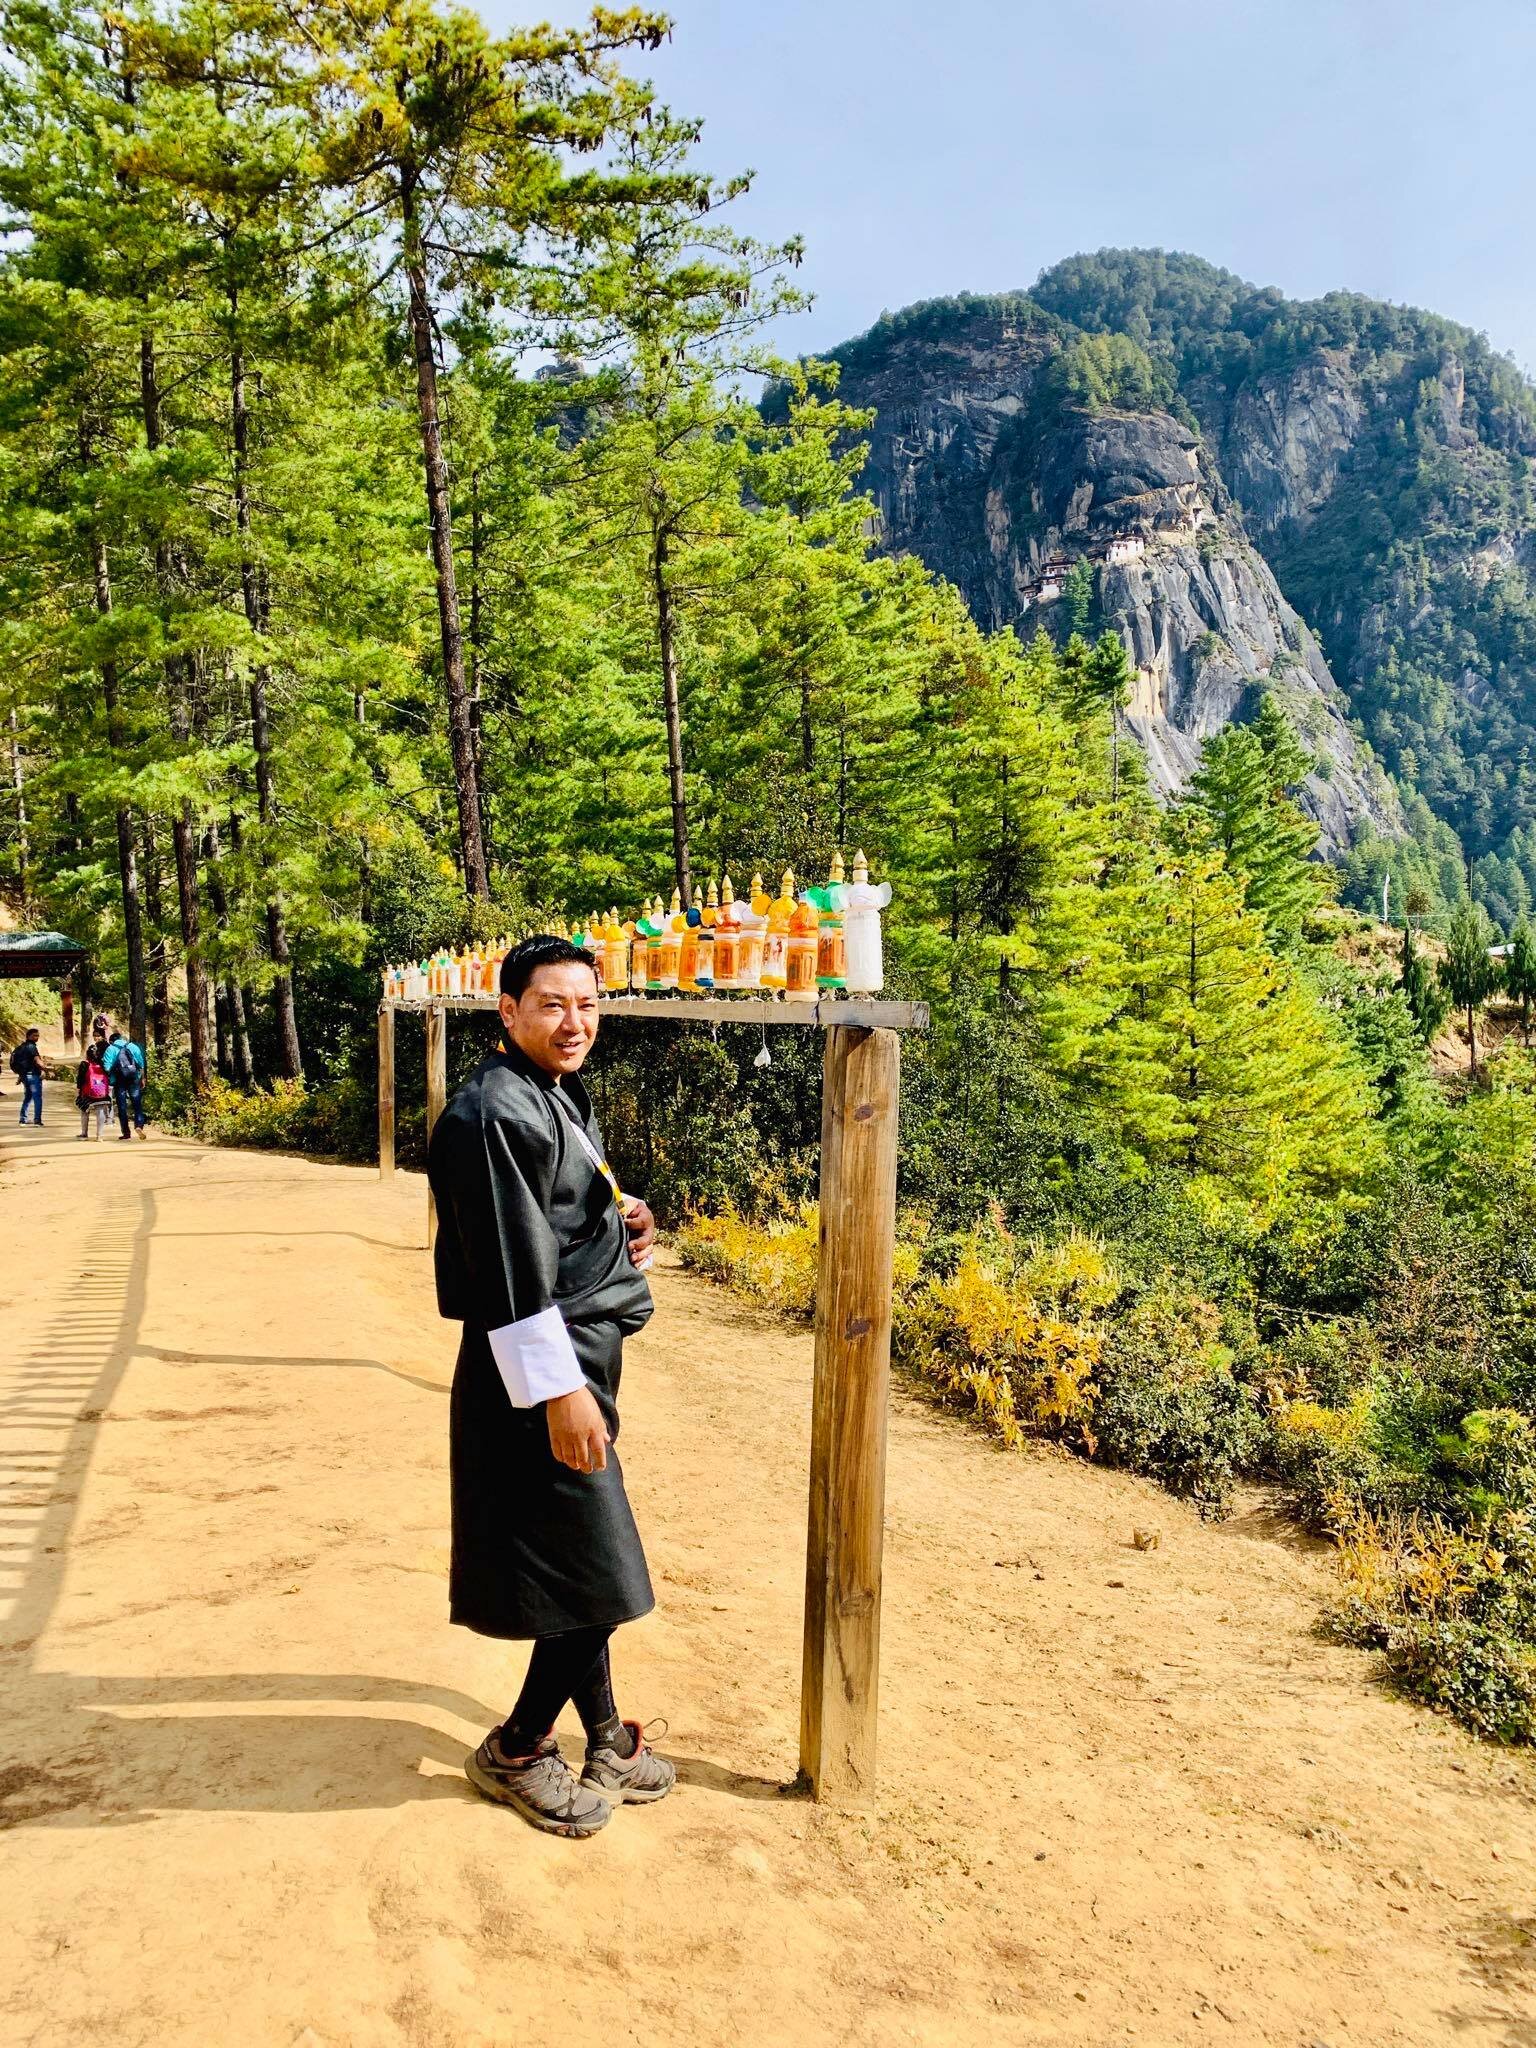 TIGER’S NEST or Paro Taktsang in Bhutan13.jpg